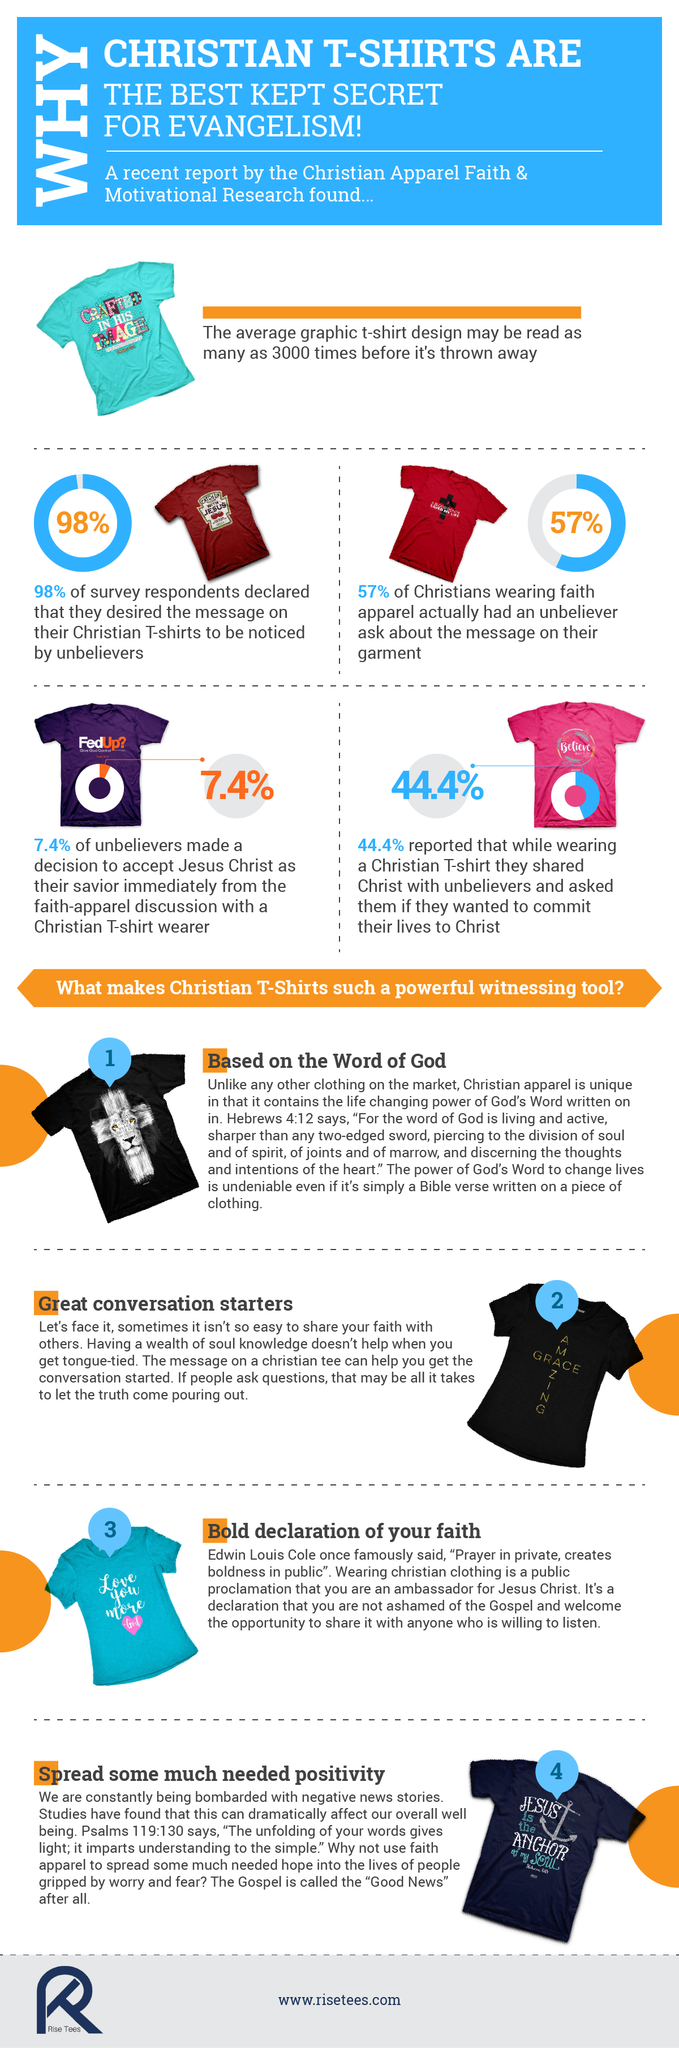 Christian T-Shirts: Best Kept Secret For Evangelism Infographic